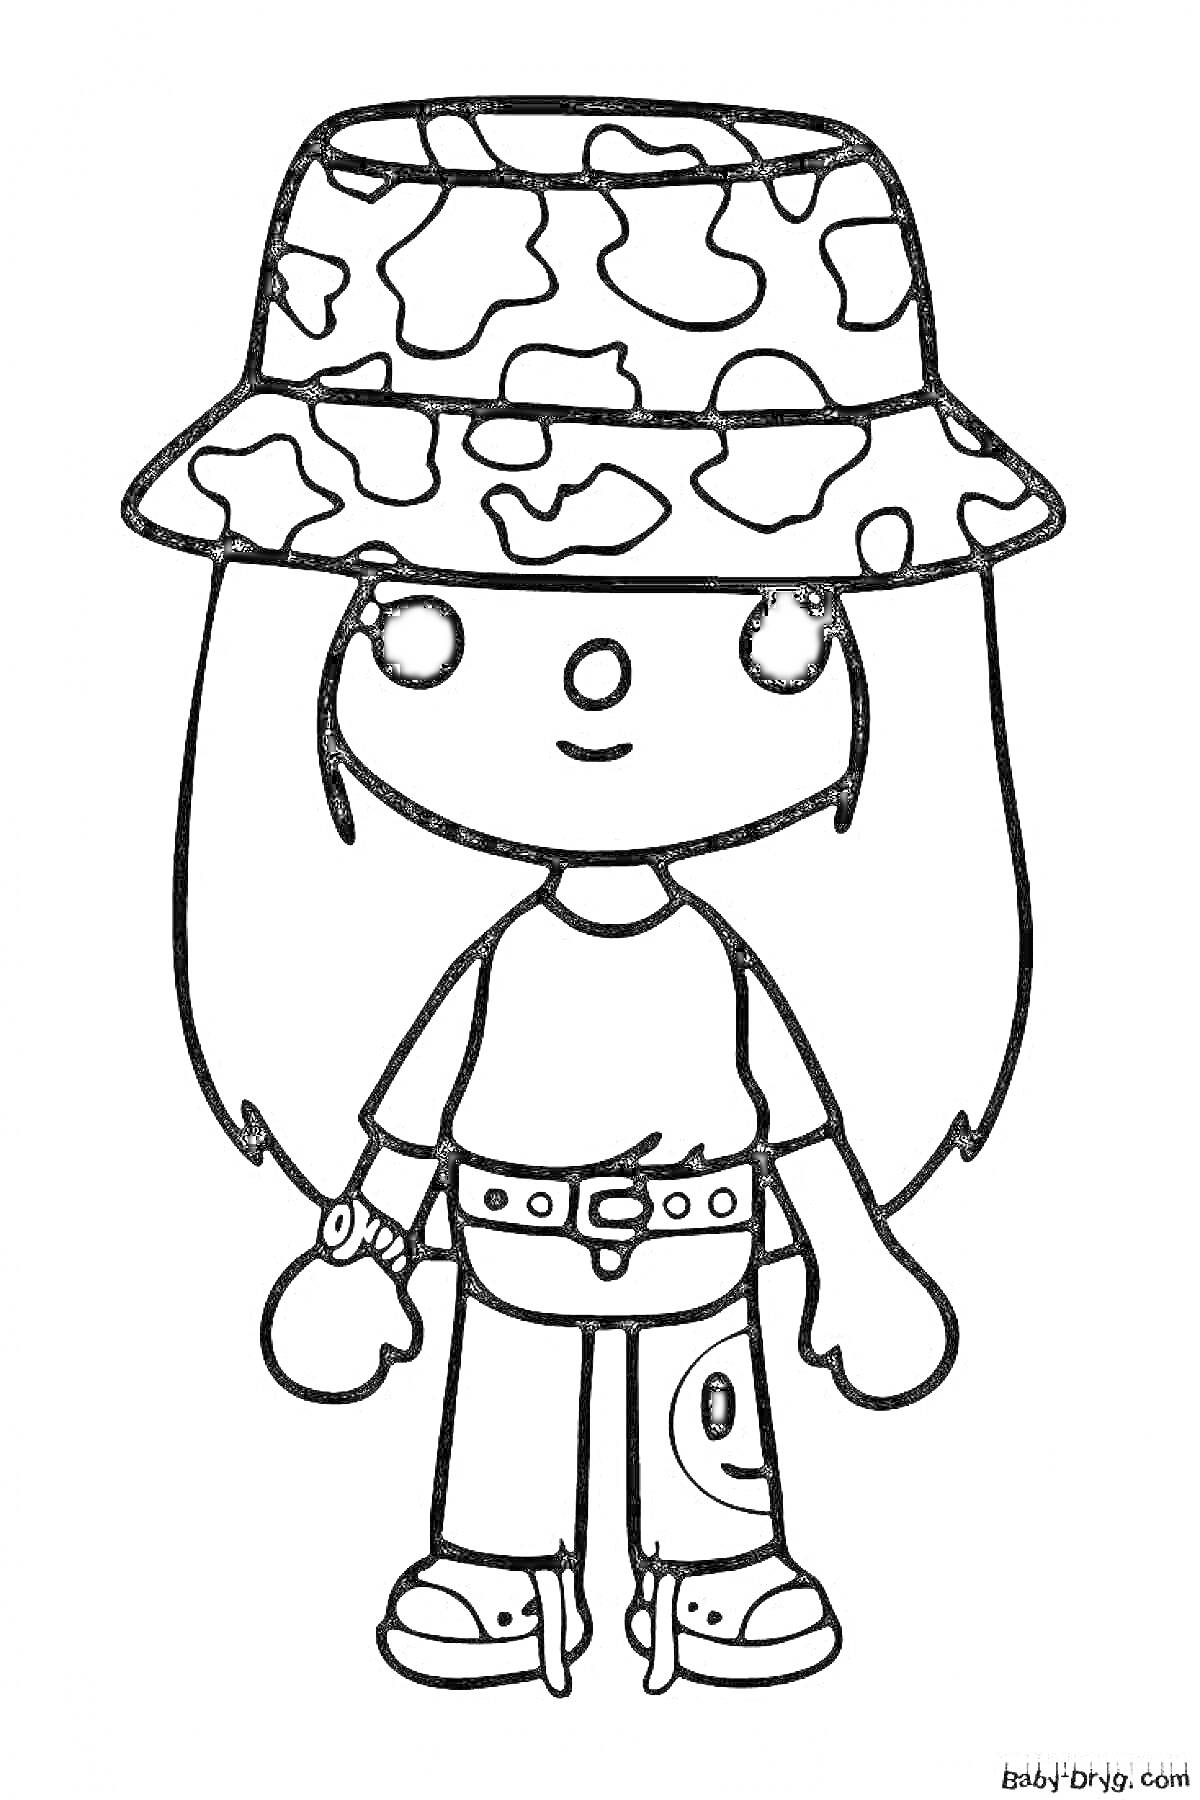 Раскраска Девочка в шляпе с камуфляжным принтом, футболке, брюках с карманом и сандалиях